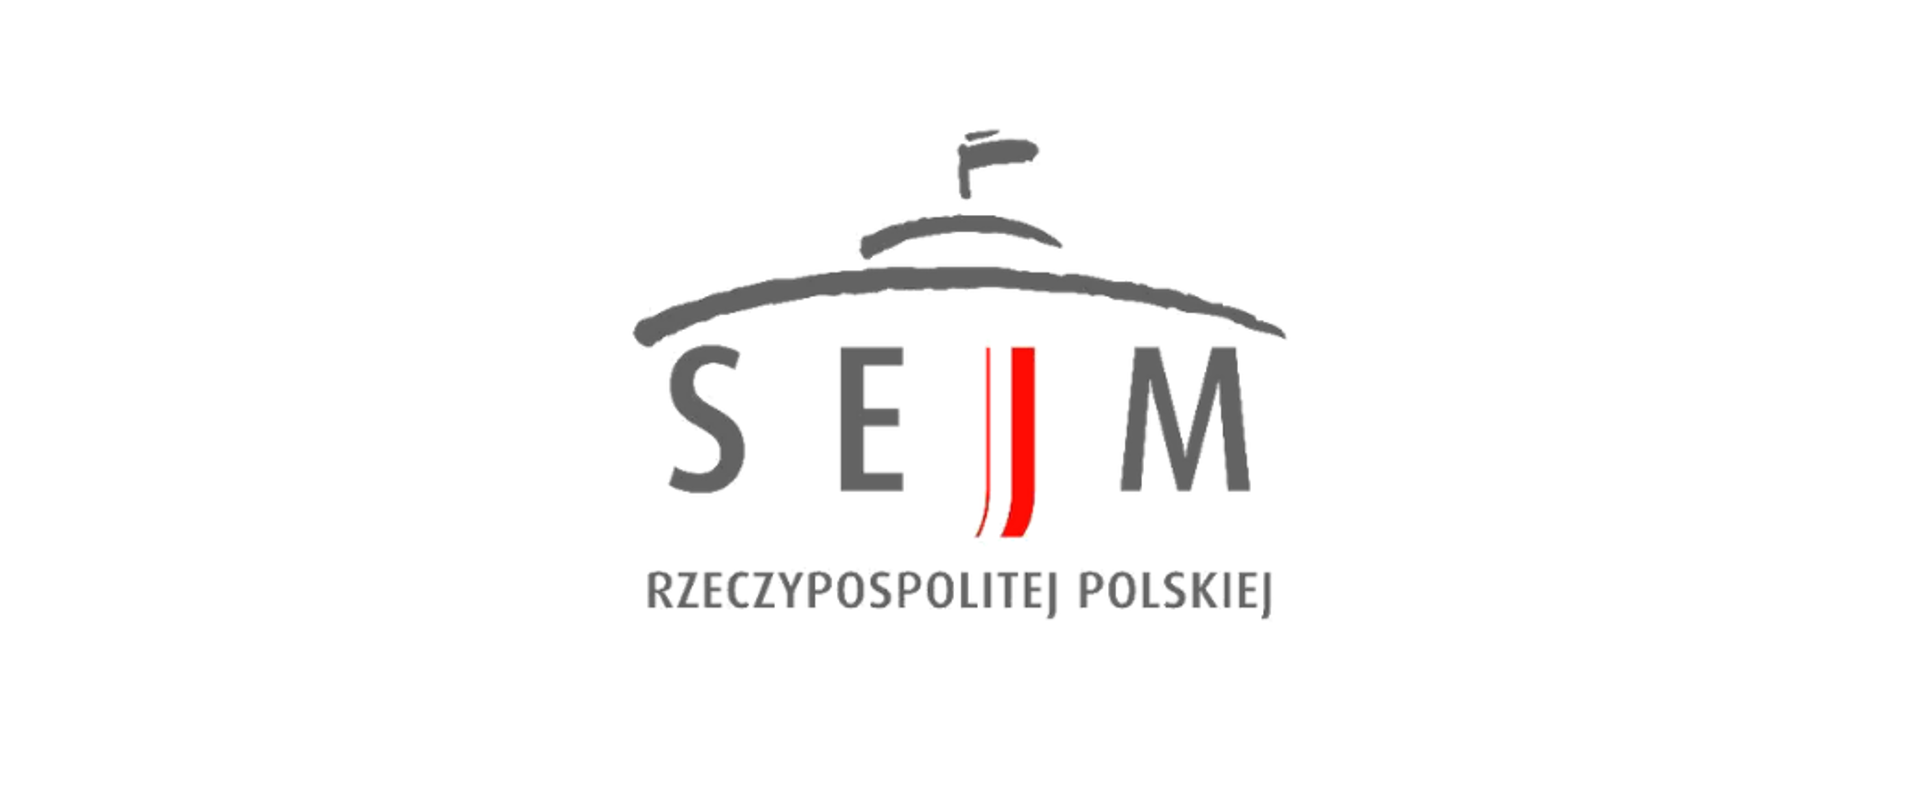 Na białym tle centralnie umieszony napis "Sejm", w kolorze grafitowym. Litera "J" na formę pionowej biało-czerwonej flagi. Poniżej napis "Rzeczypospolitej Polskiej" w kolorze grafitowym. Nad napisem sejm ukośna linia symbolizująca owalny kształt budynku sejmu, nad nią kolejna owalna linia symbolizująca wieżyczkę z masztem na szczycie budynku.